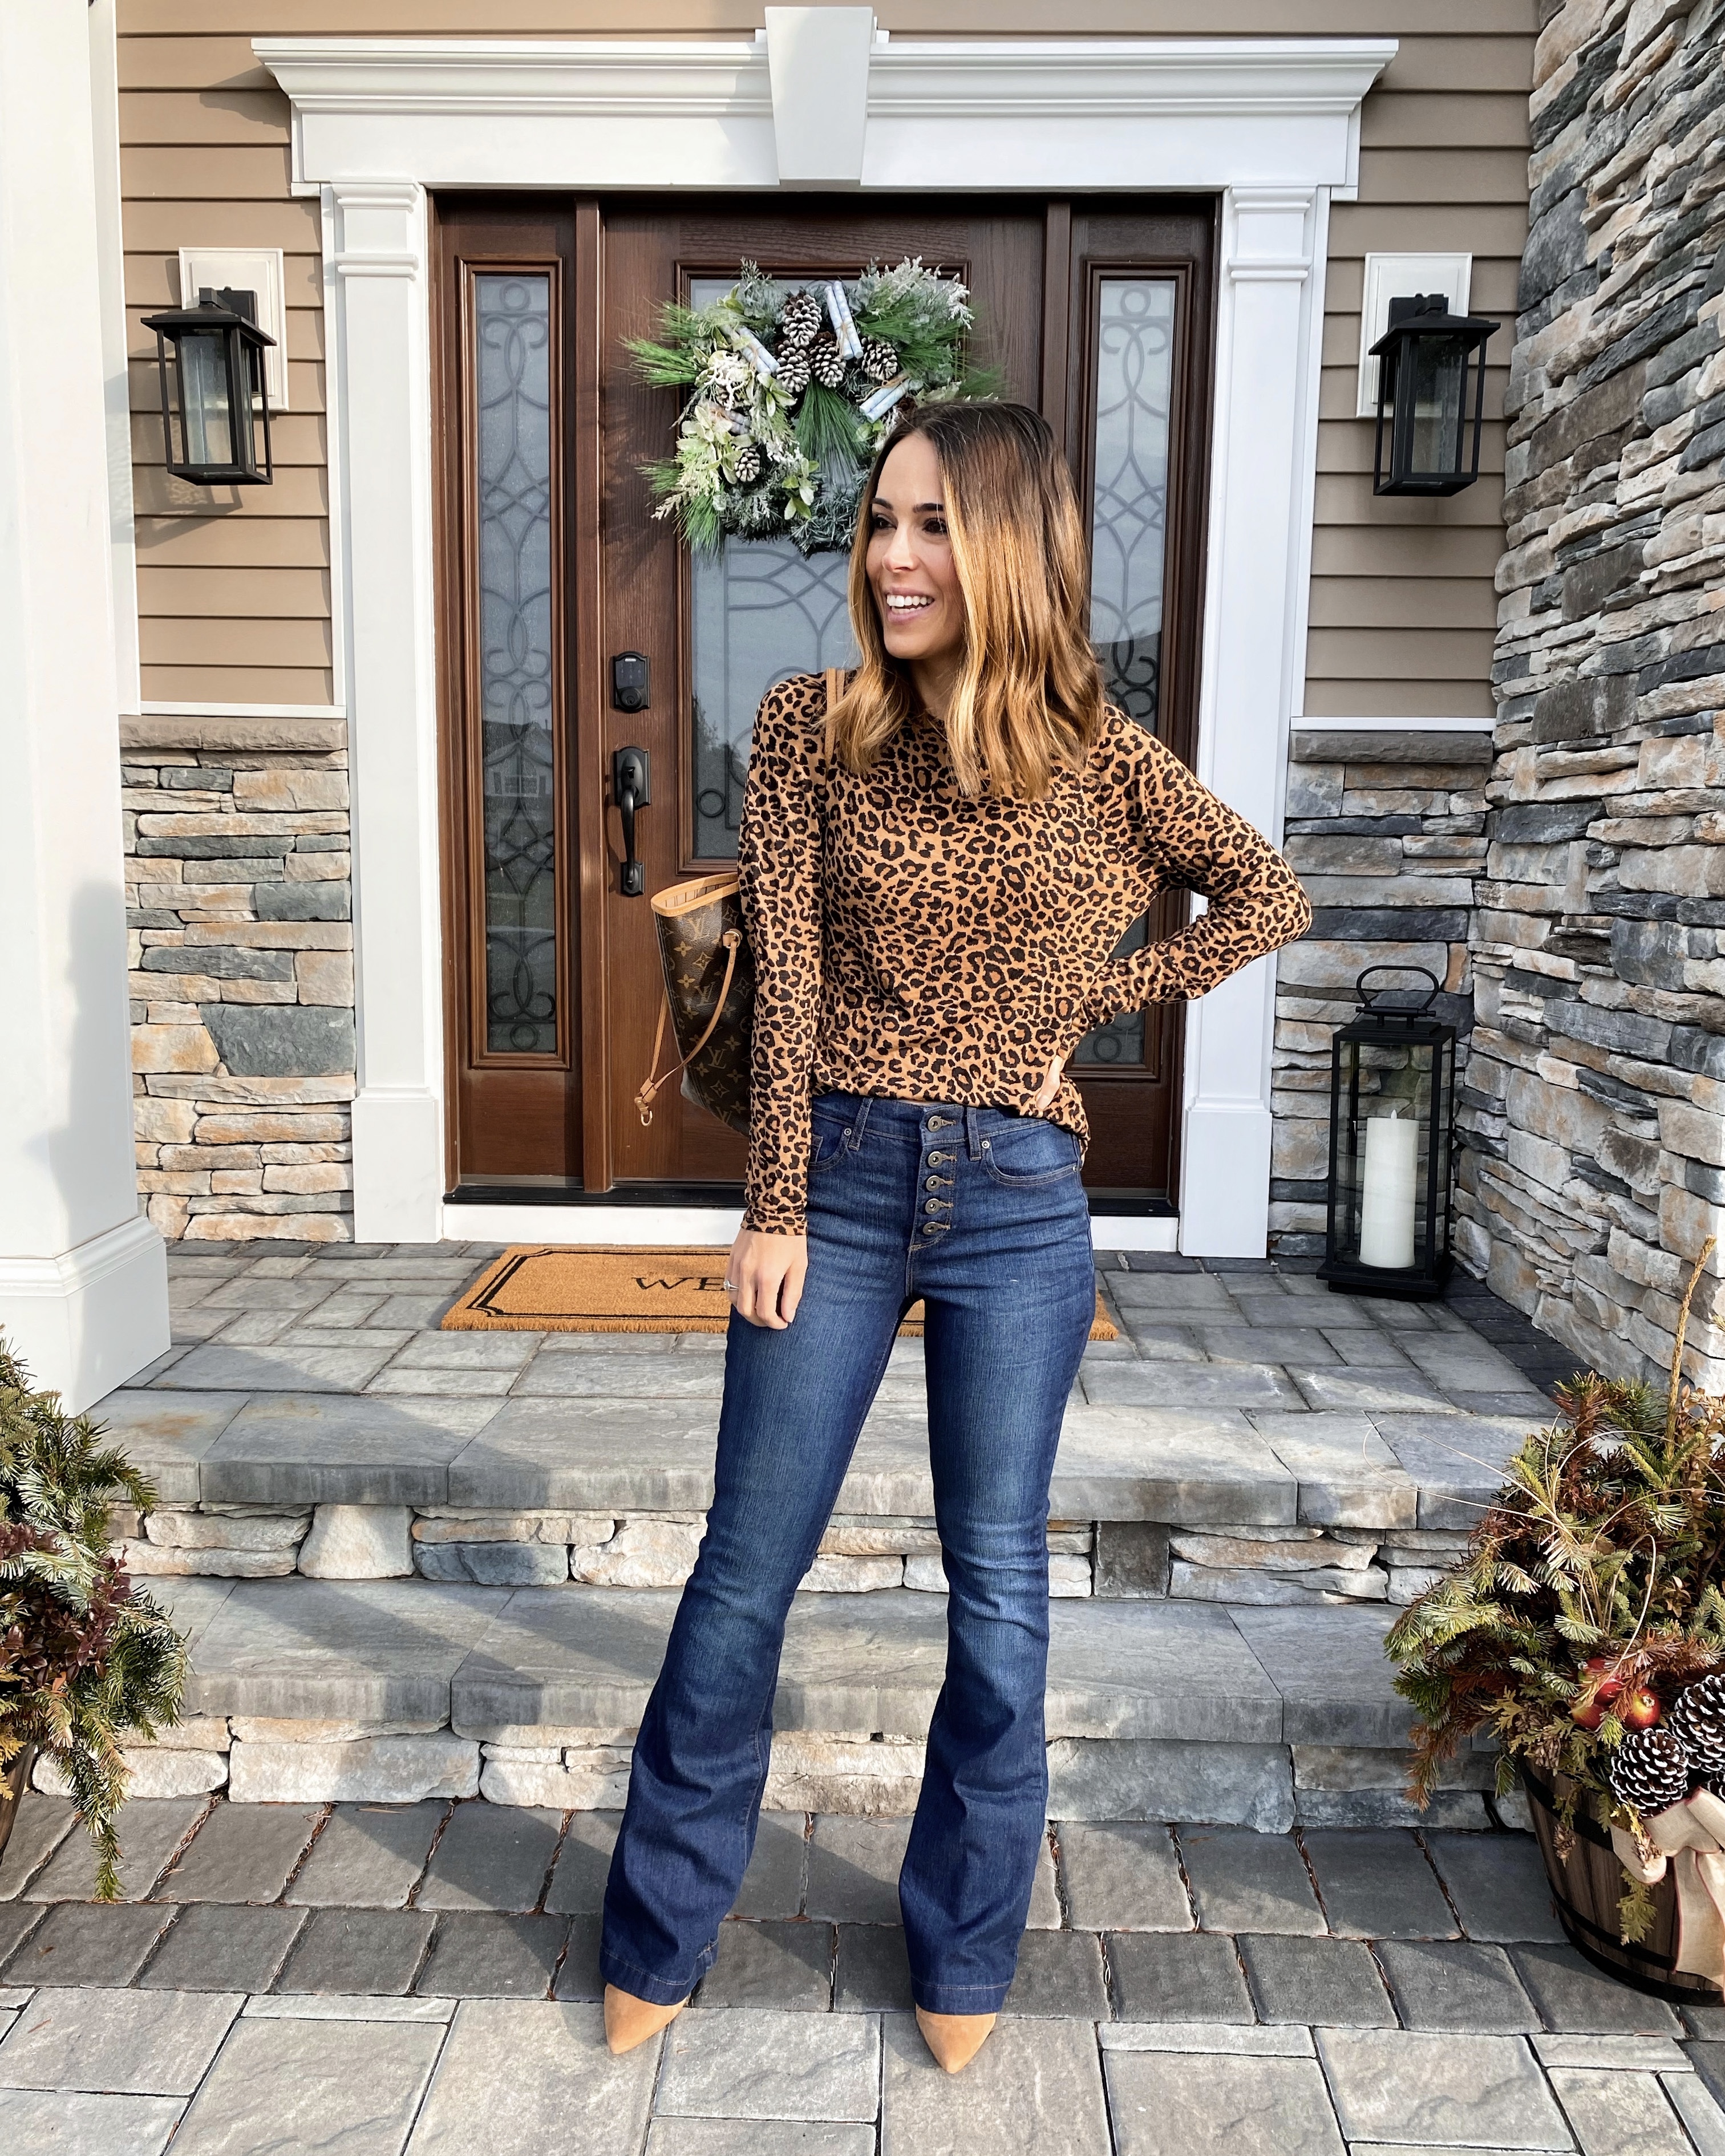 SOFIA VERGARA for Sofia Jeans Collection – Instagram Photos